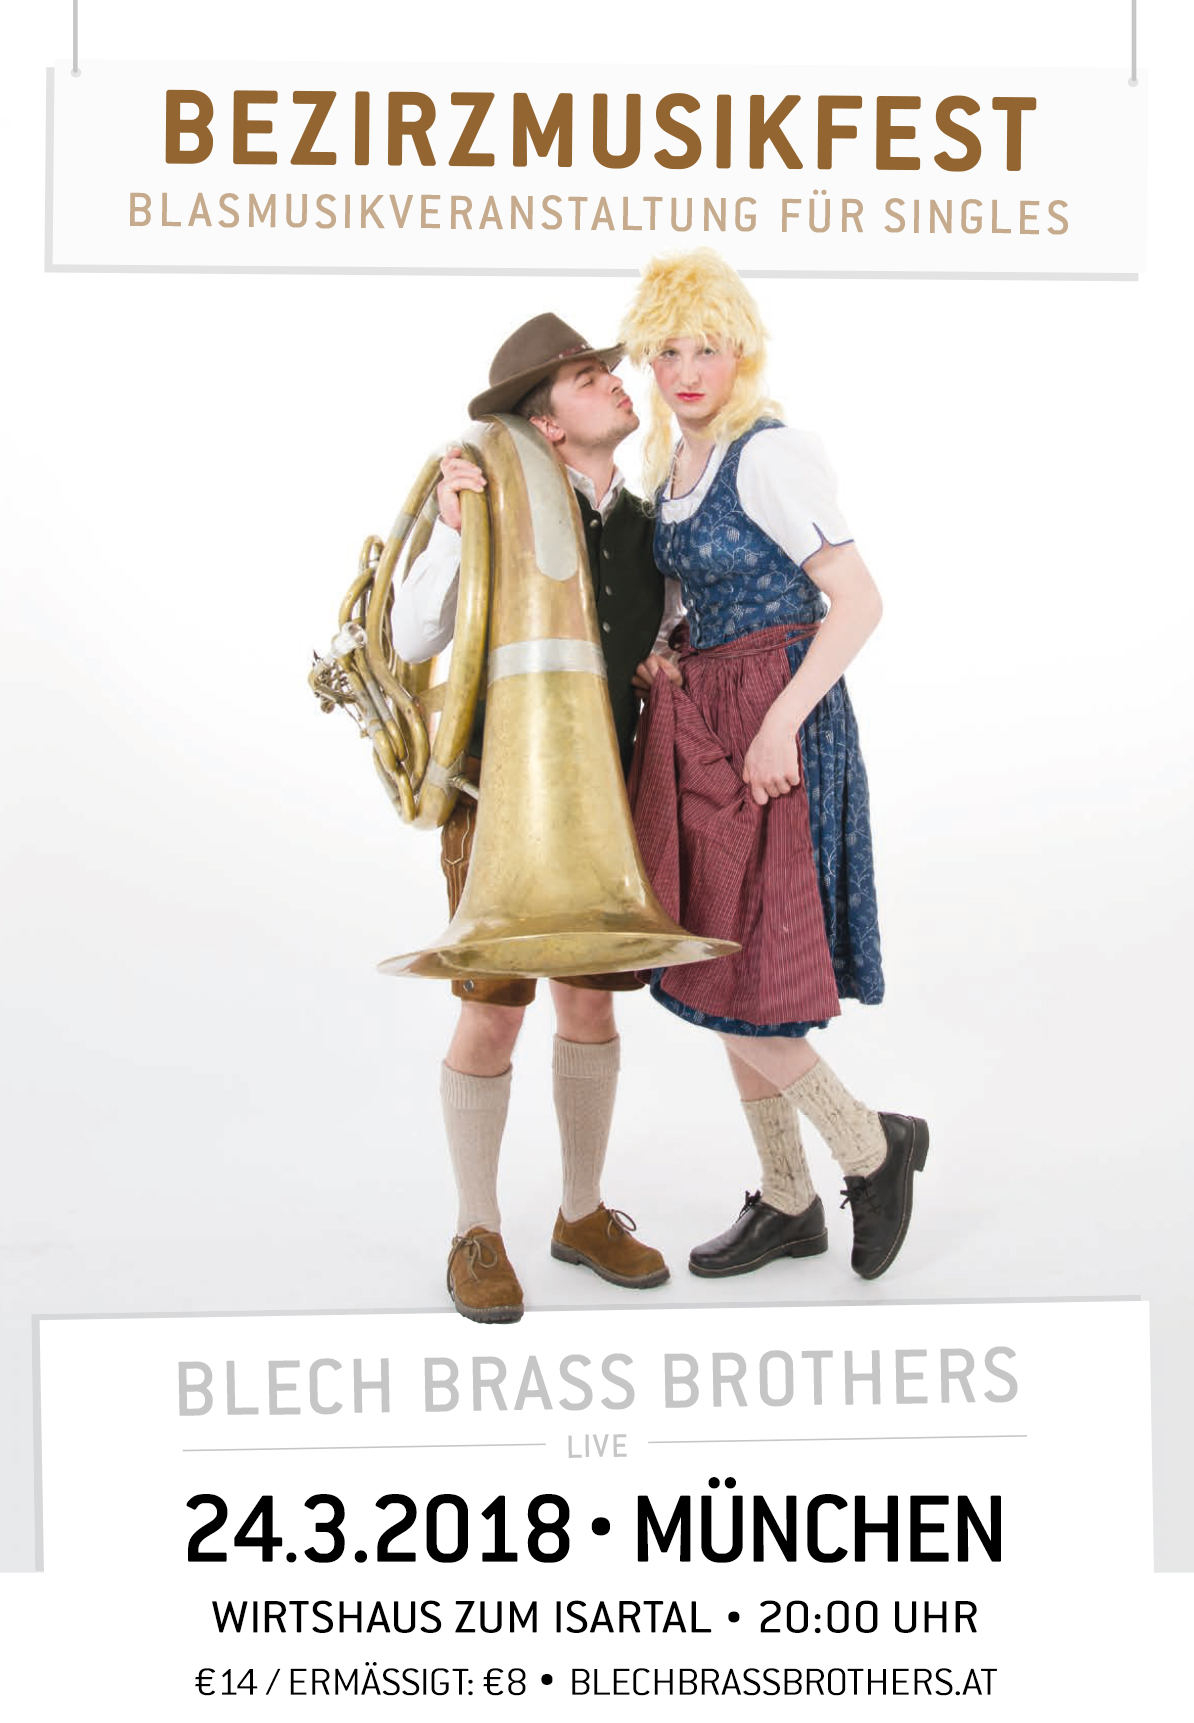 Bezirzmusikfest - Blech Brass Brothers